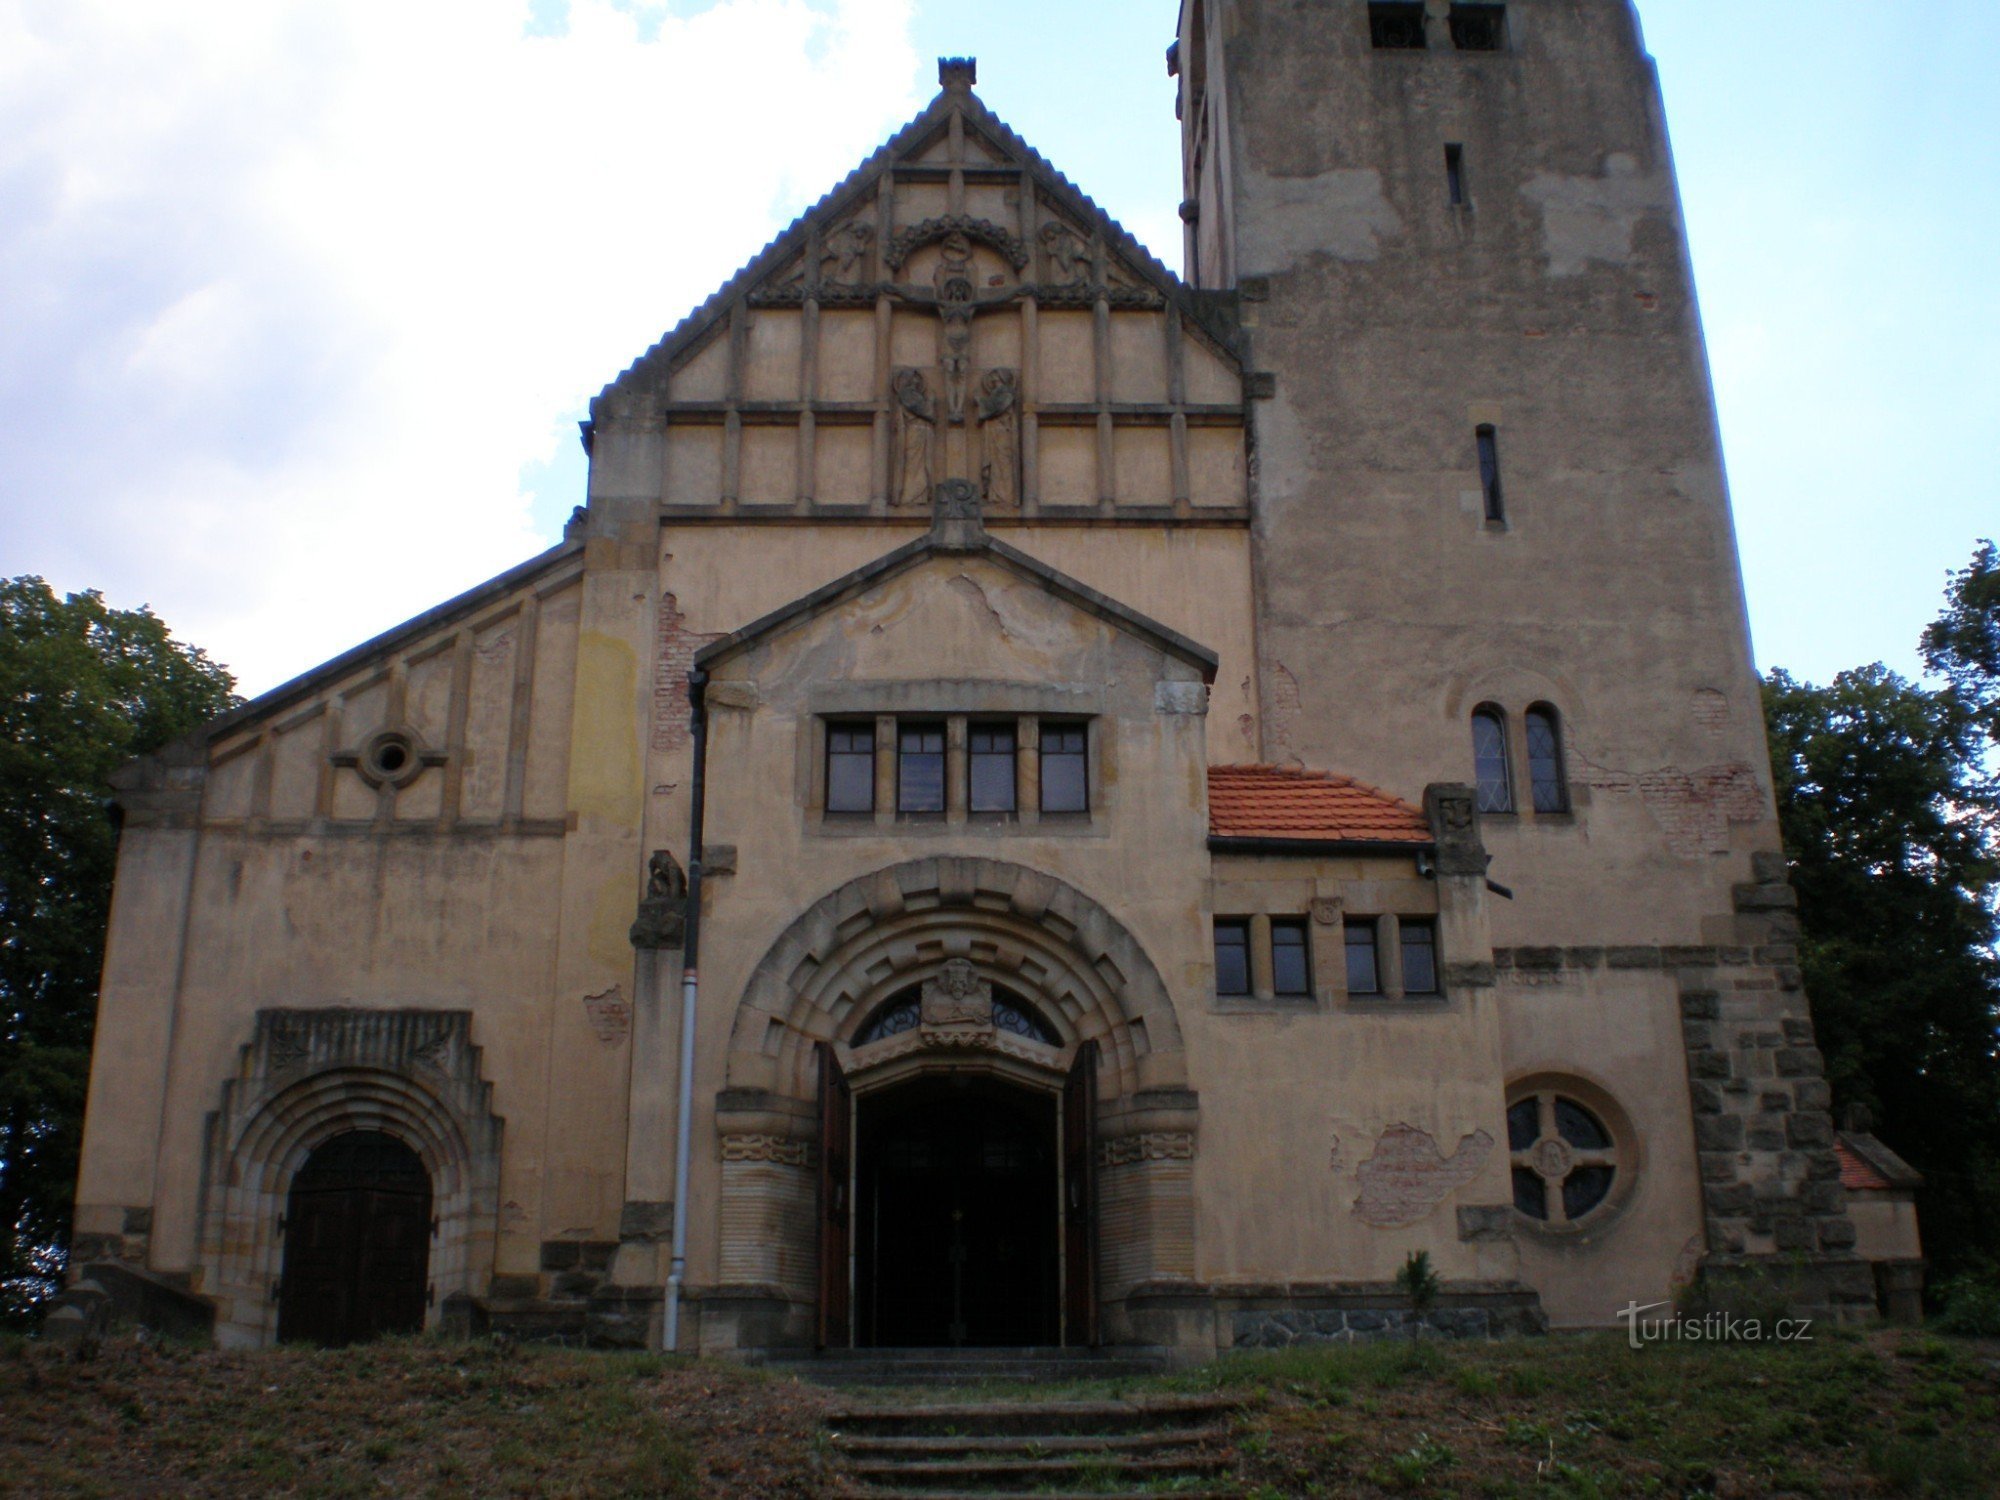 Štěchovice - church of St. Jan Nepomucký